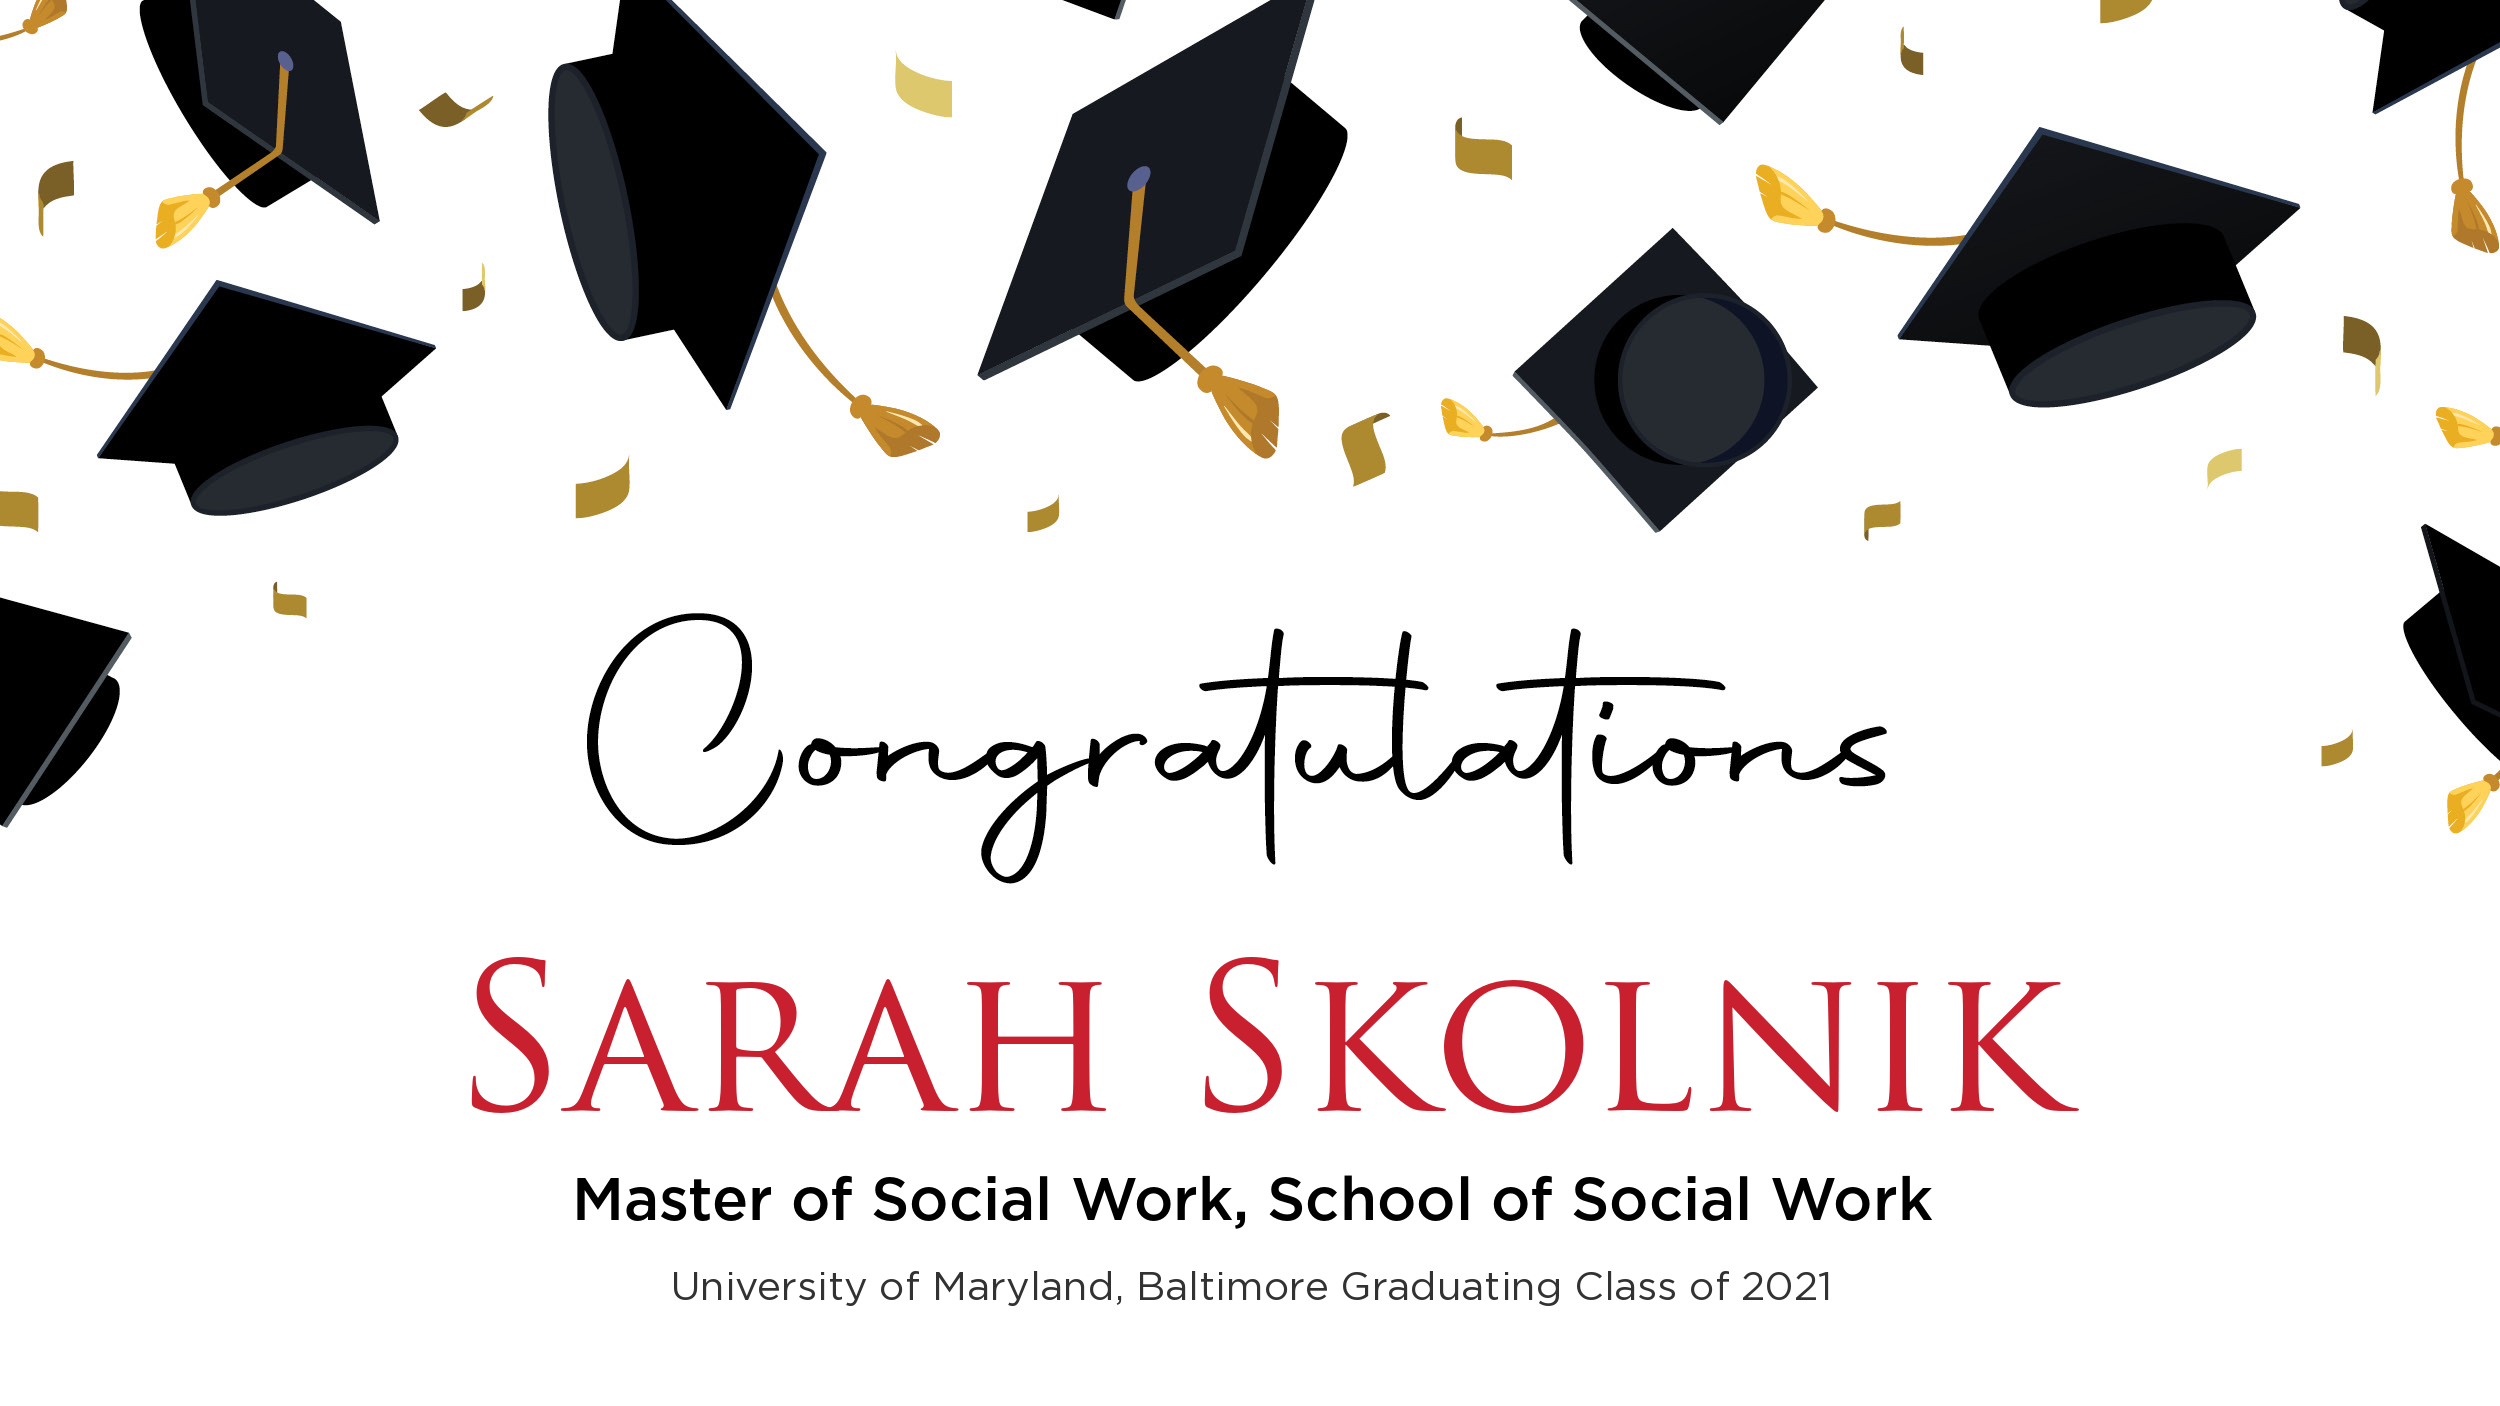 Congratulations Sarah Skolnik, Master of Social Work